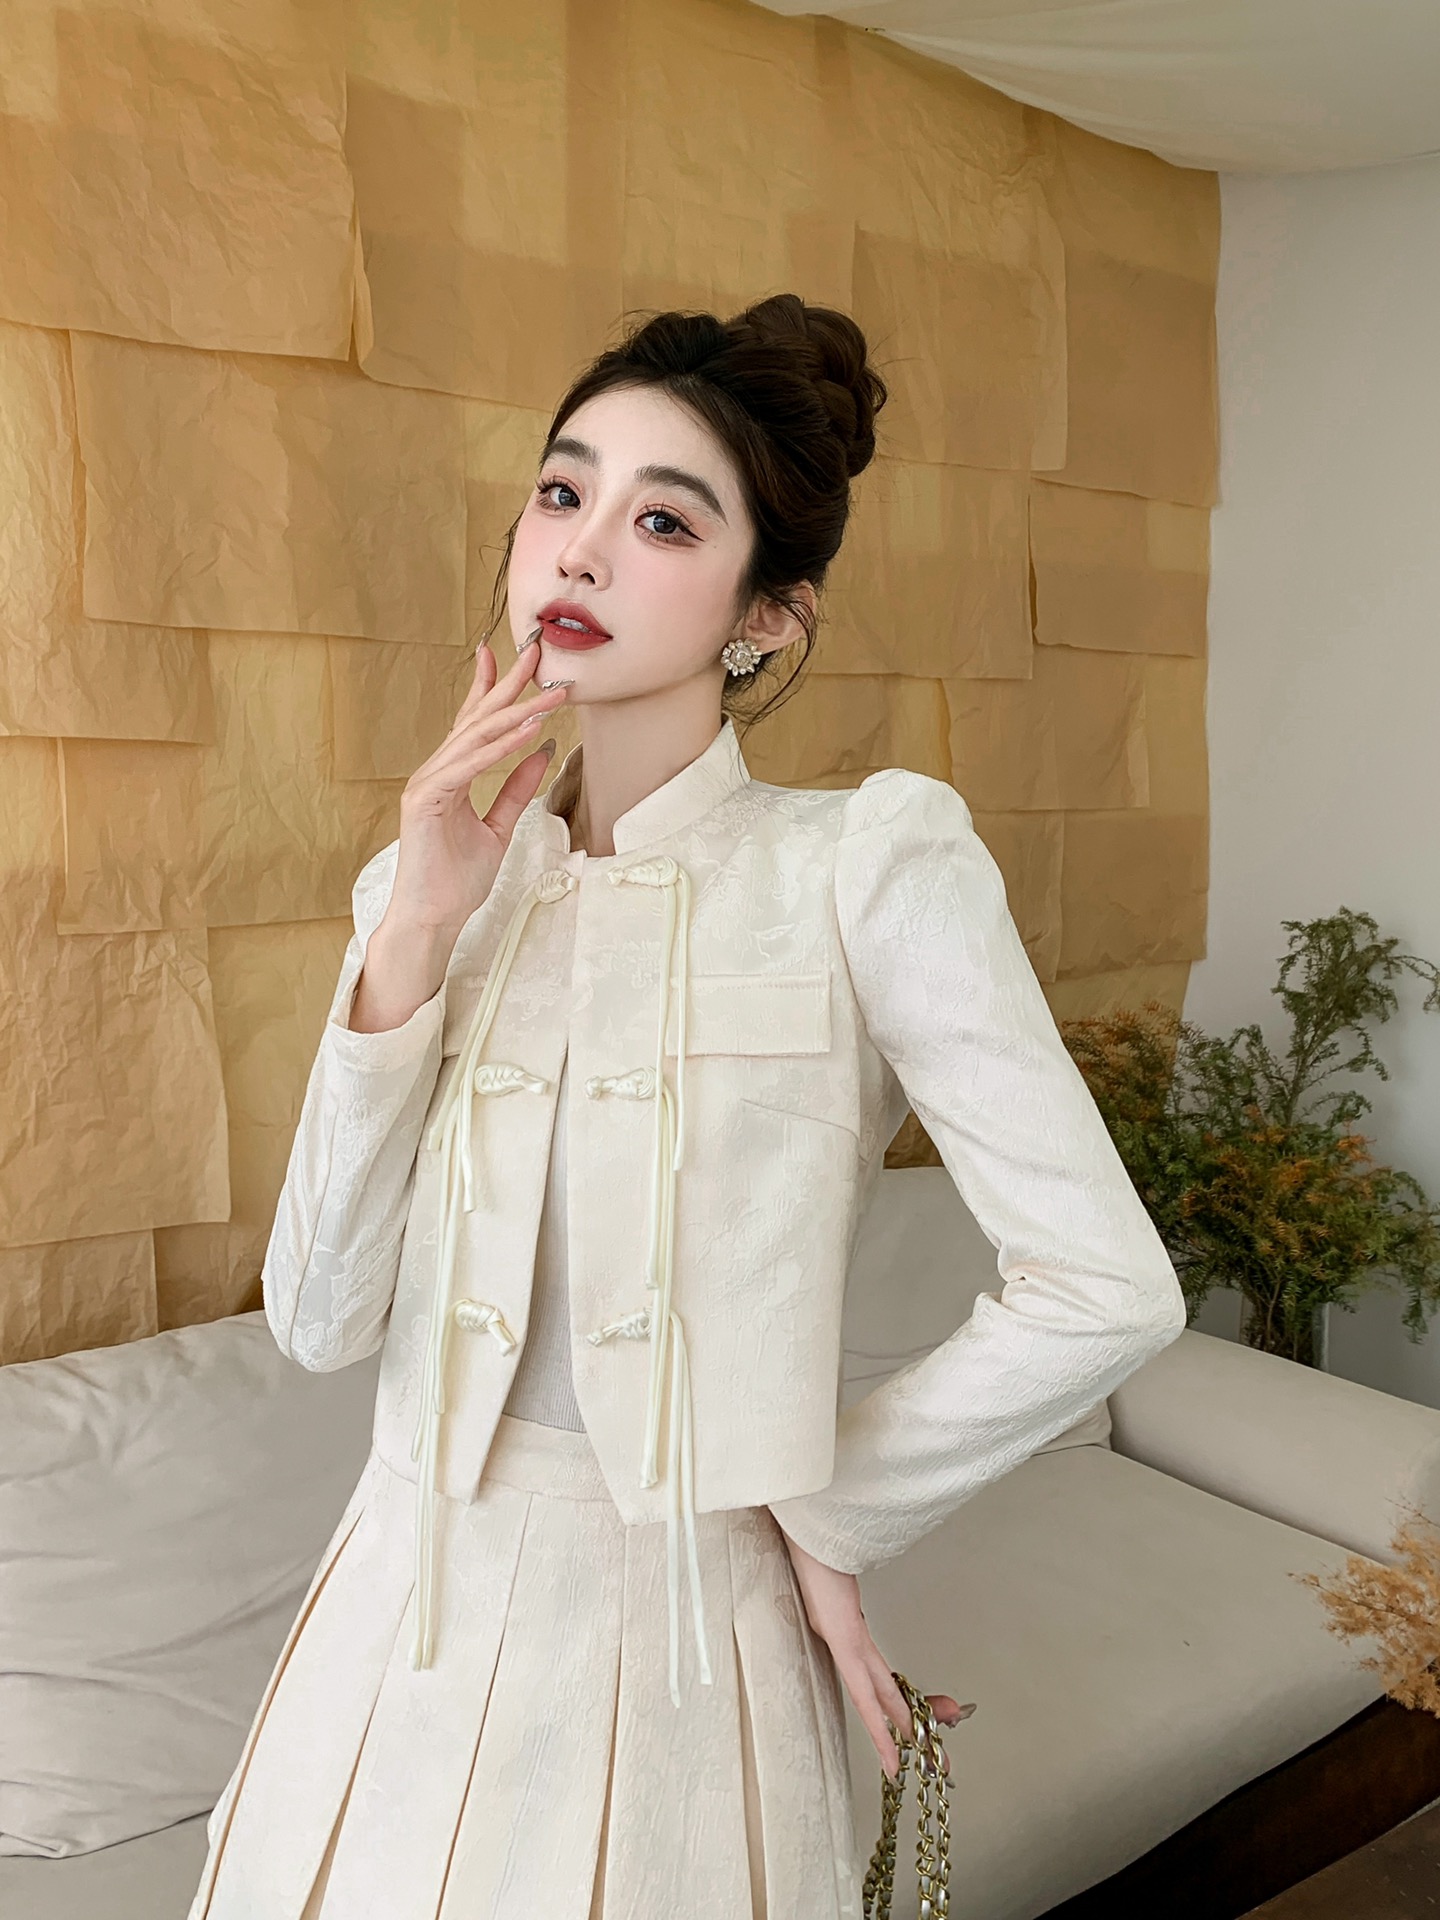 シャネル ロング スカートスーパーコピー セット レディース シンプル ファッション 優雅 快適 ホワイト_2